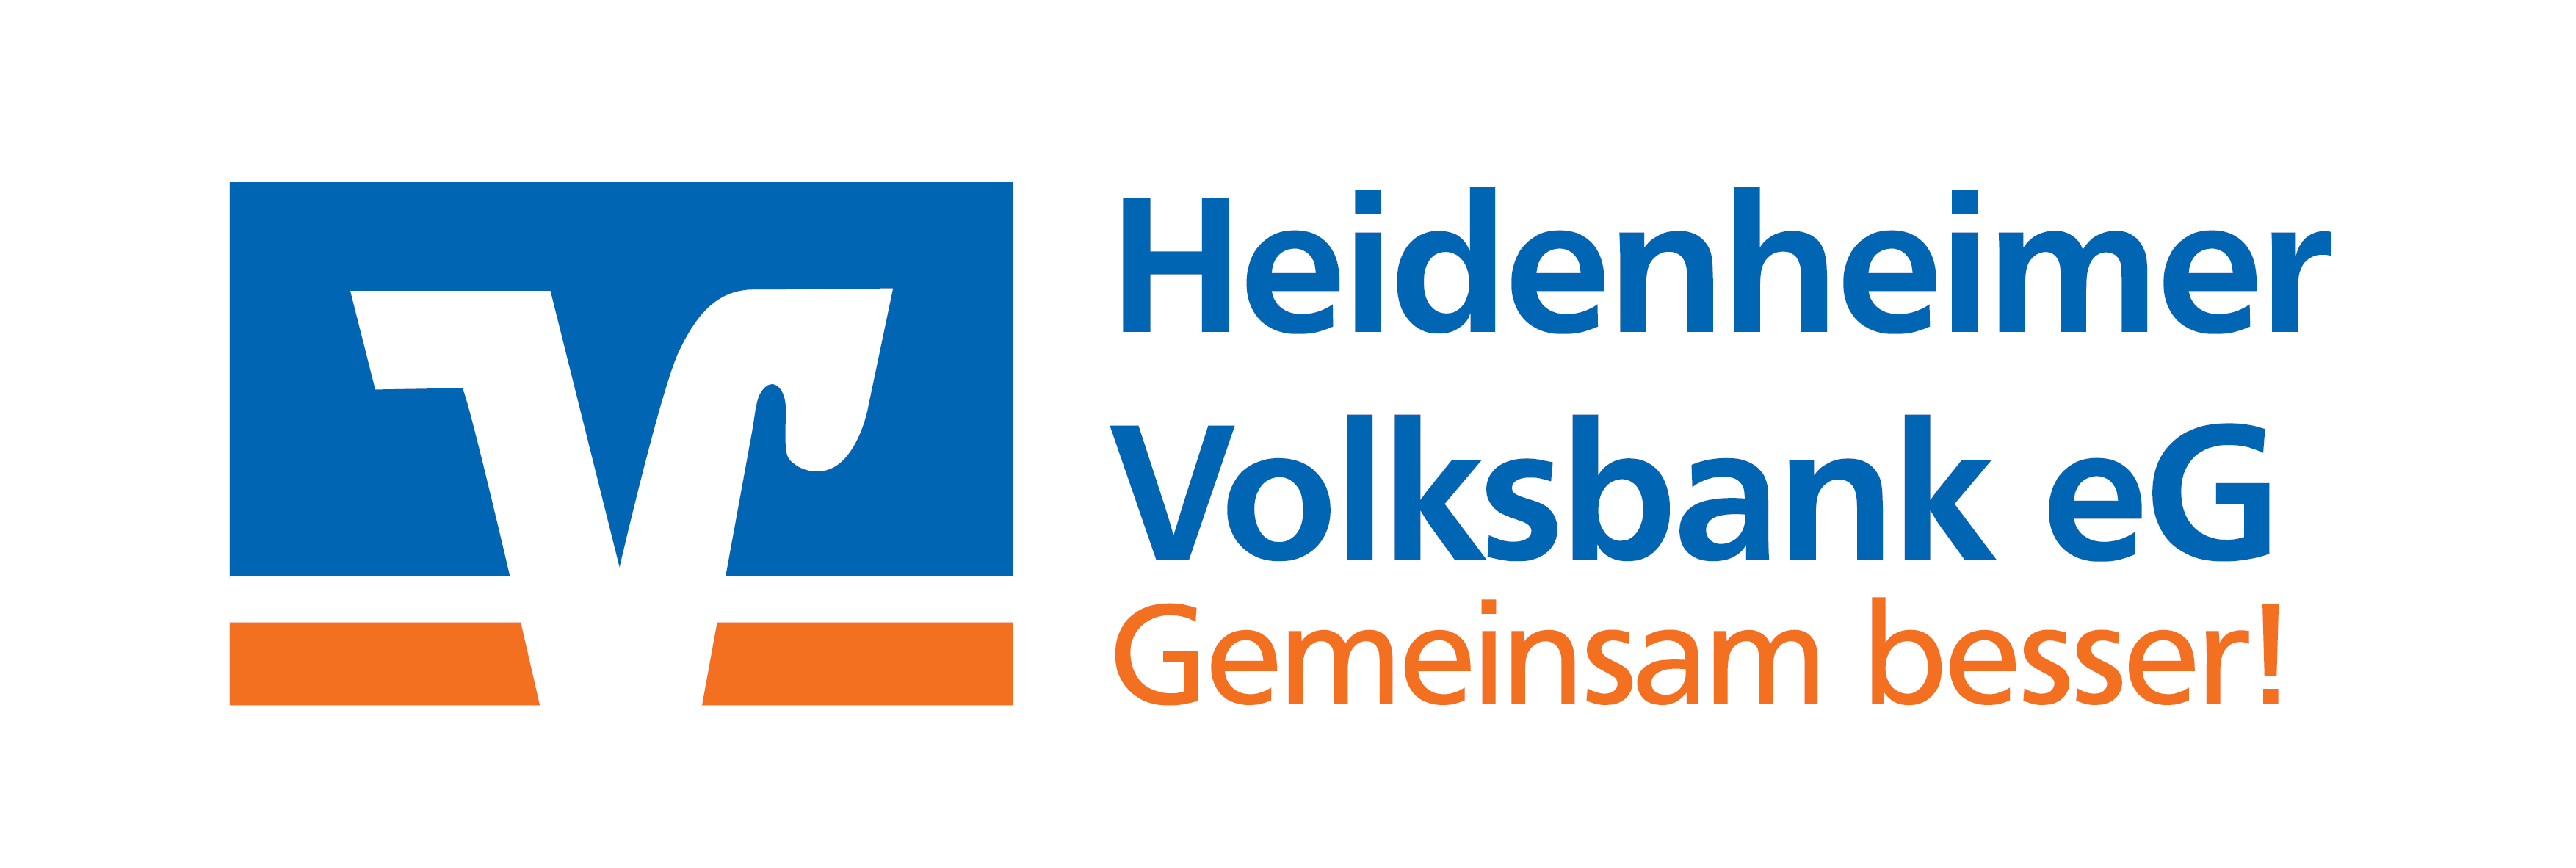 Heidenheimer Volksbank eG logo